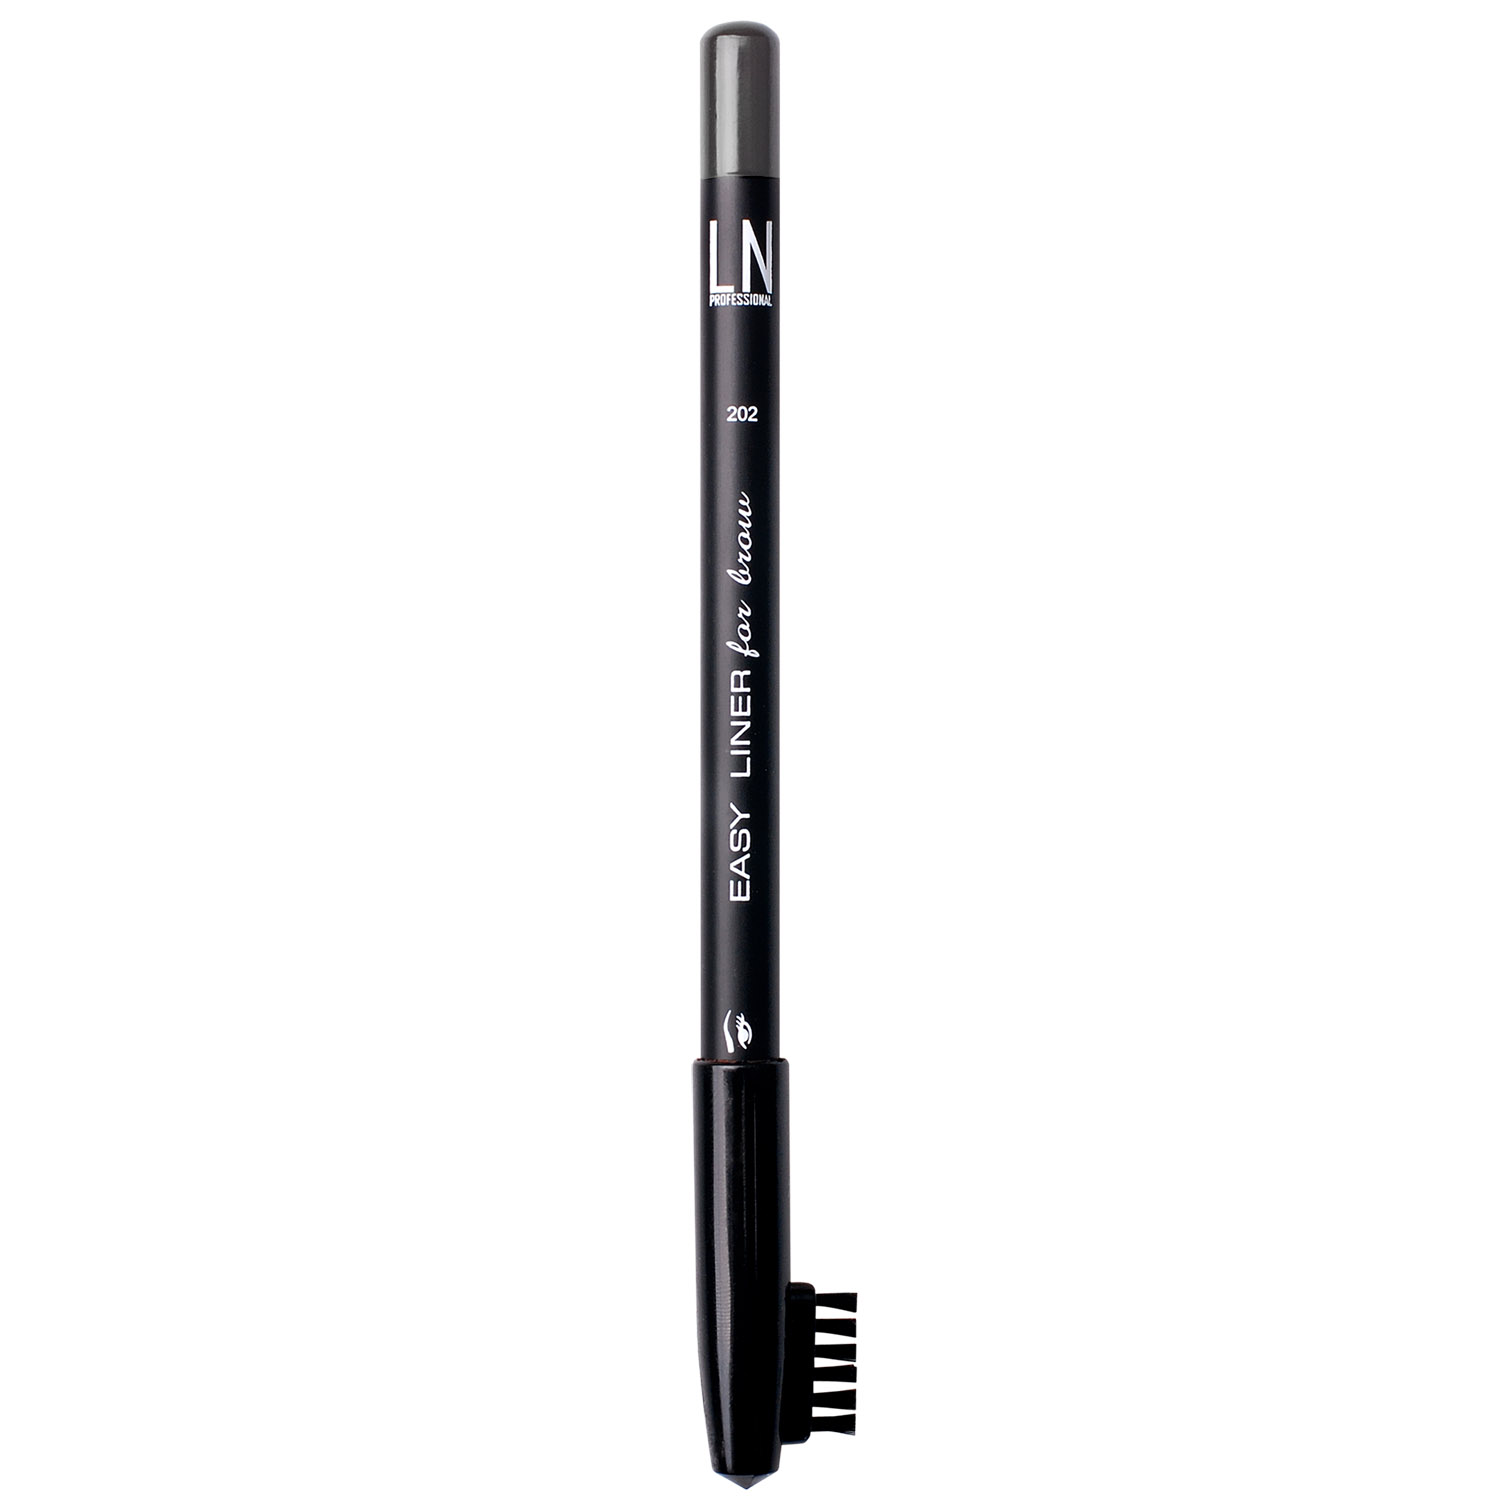 Олівець для брів LN Professional Easy Liner Brow Pencil тон 202, 1.7 г - фото 1